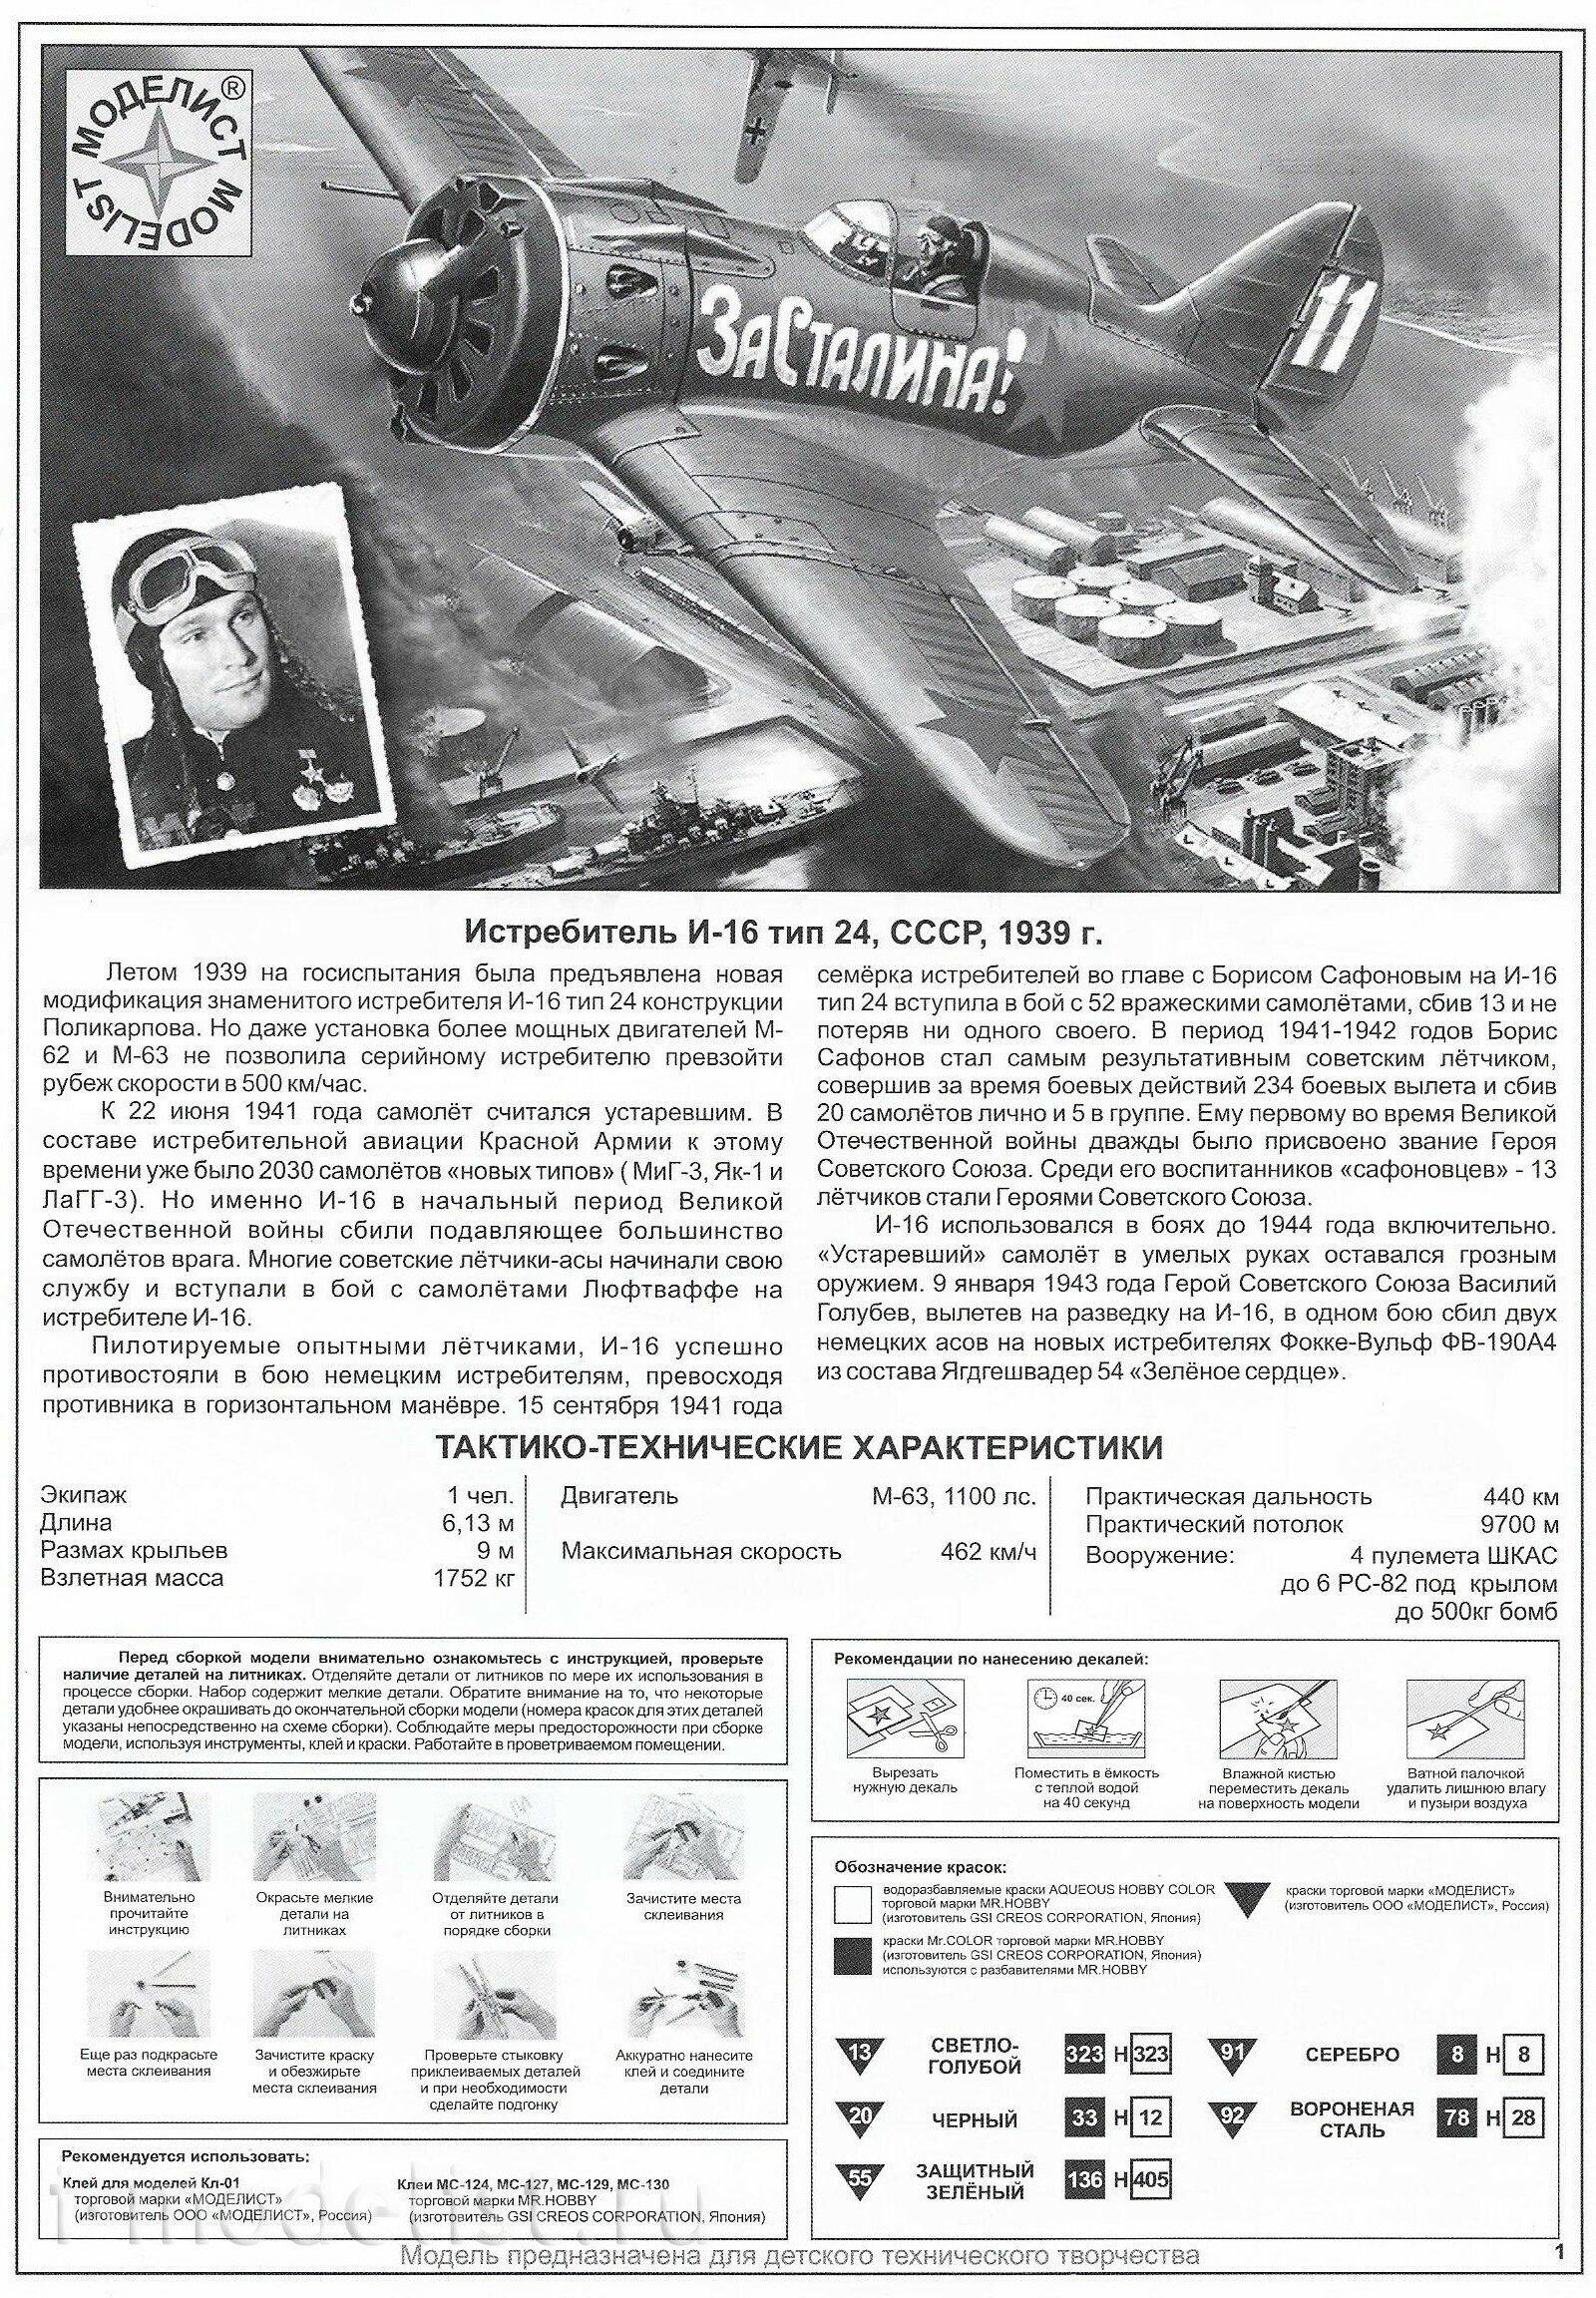 204803 Моделист 1/48 Истребитель И-16 тип 24 дважды Героя Советского Союза Бориса Сафонова